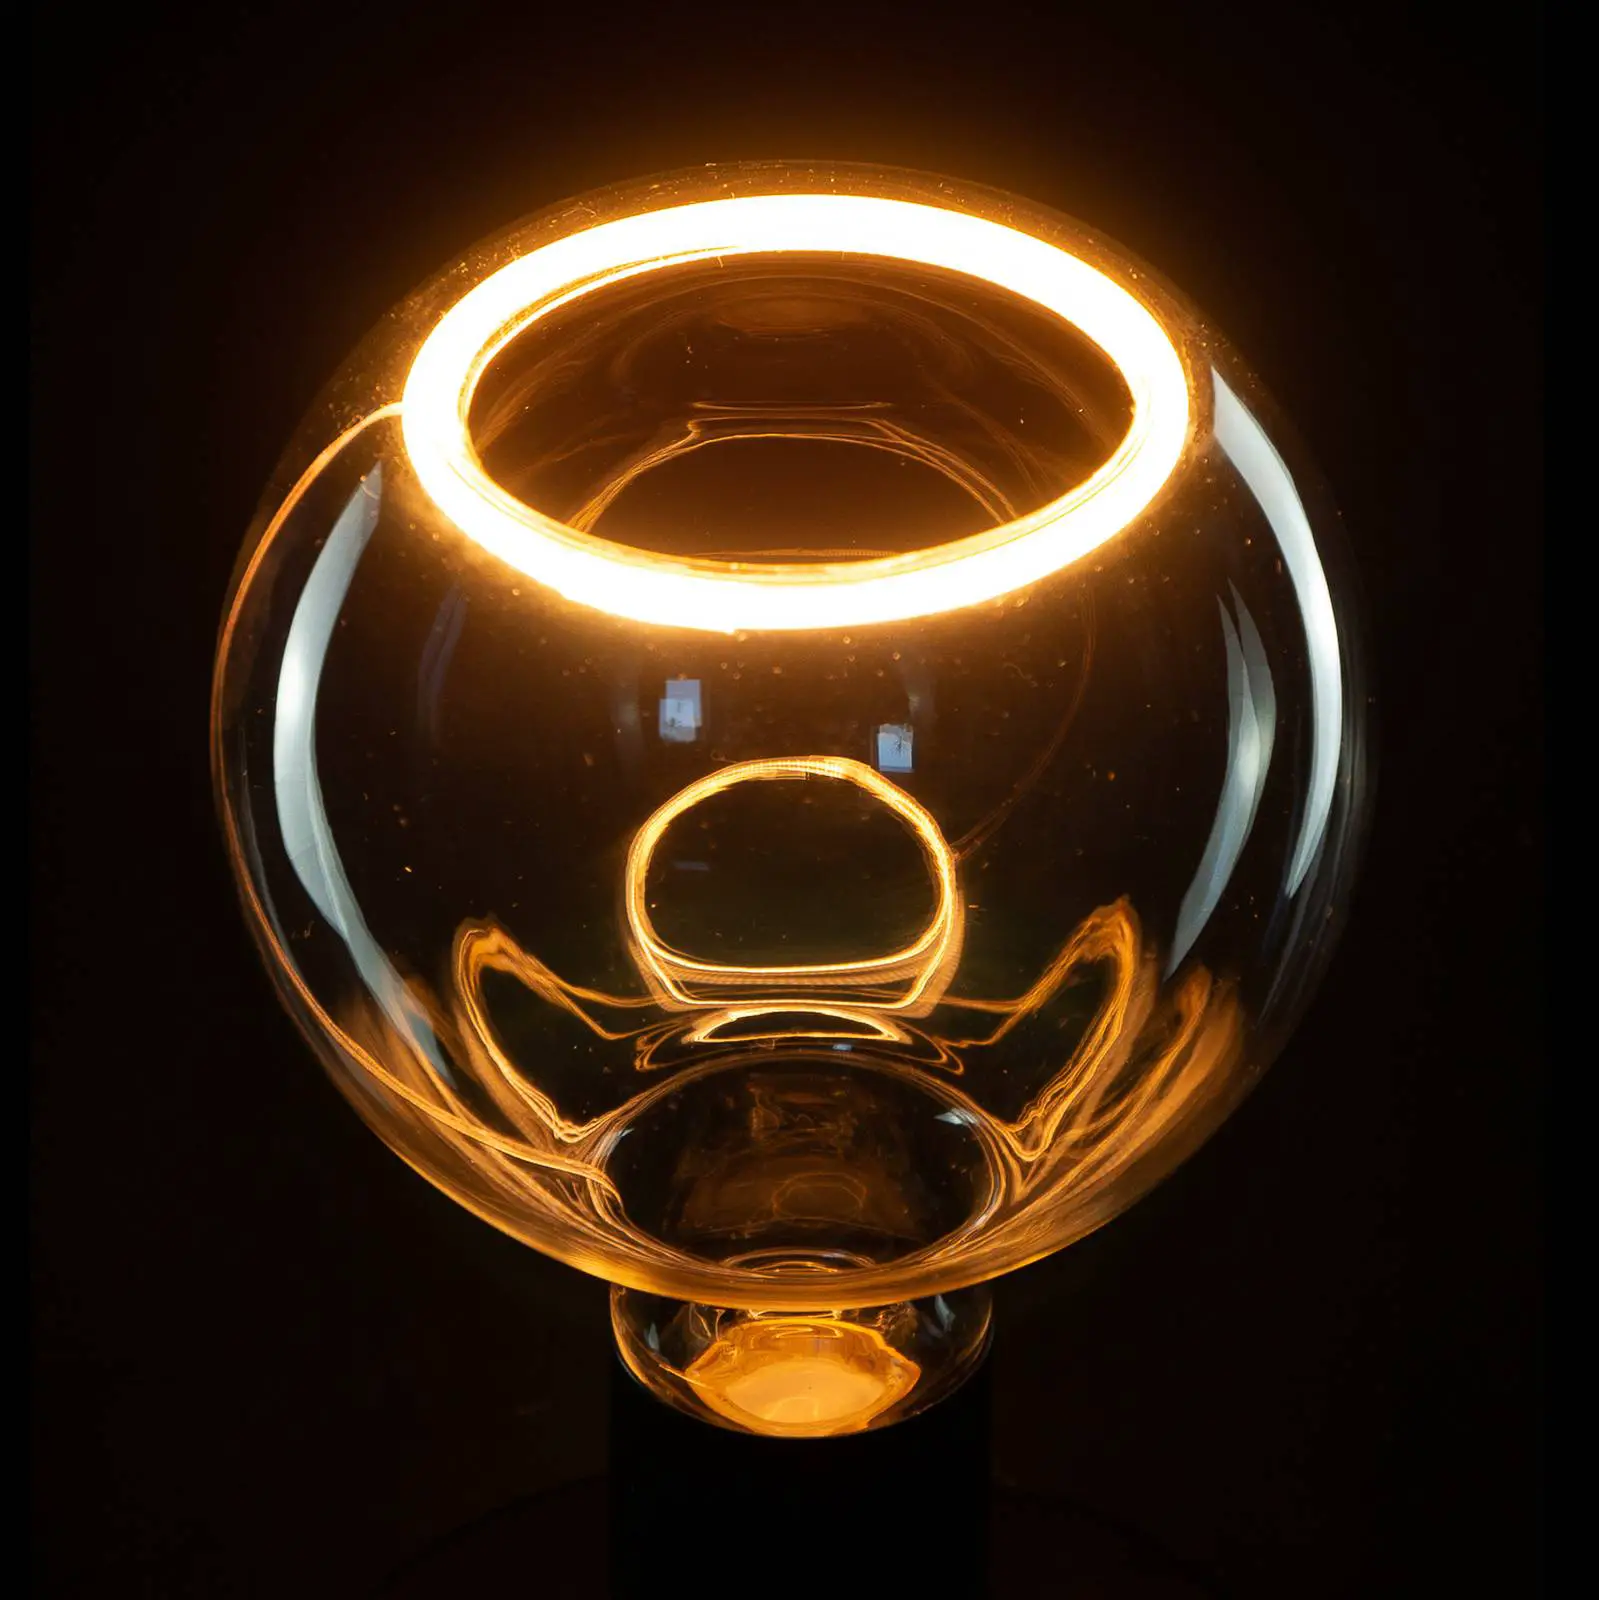 SEGULA LED floating bollamp G125 E27 4,5W helder